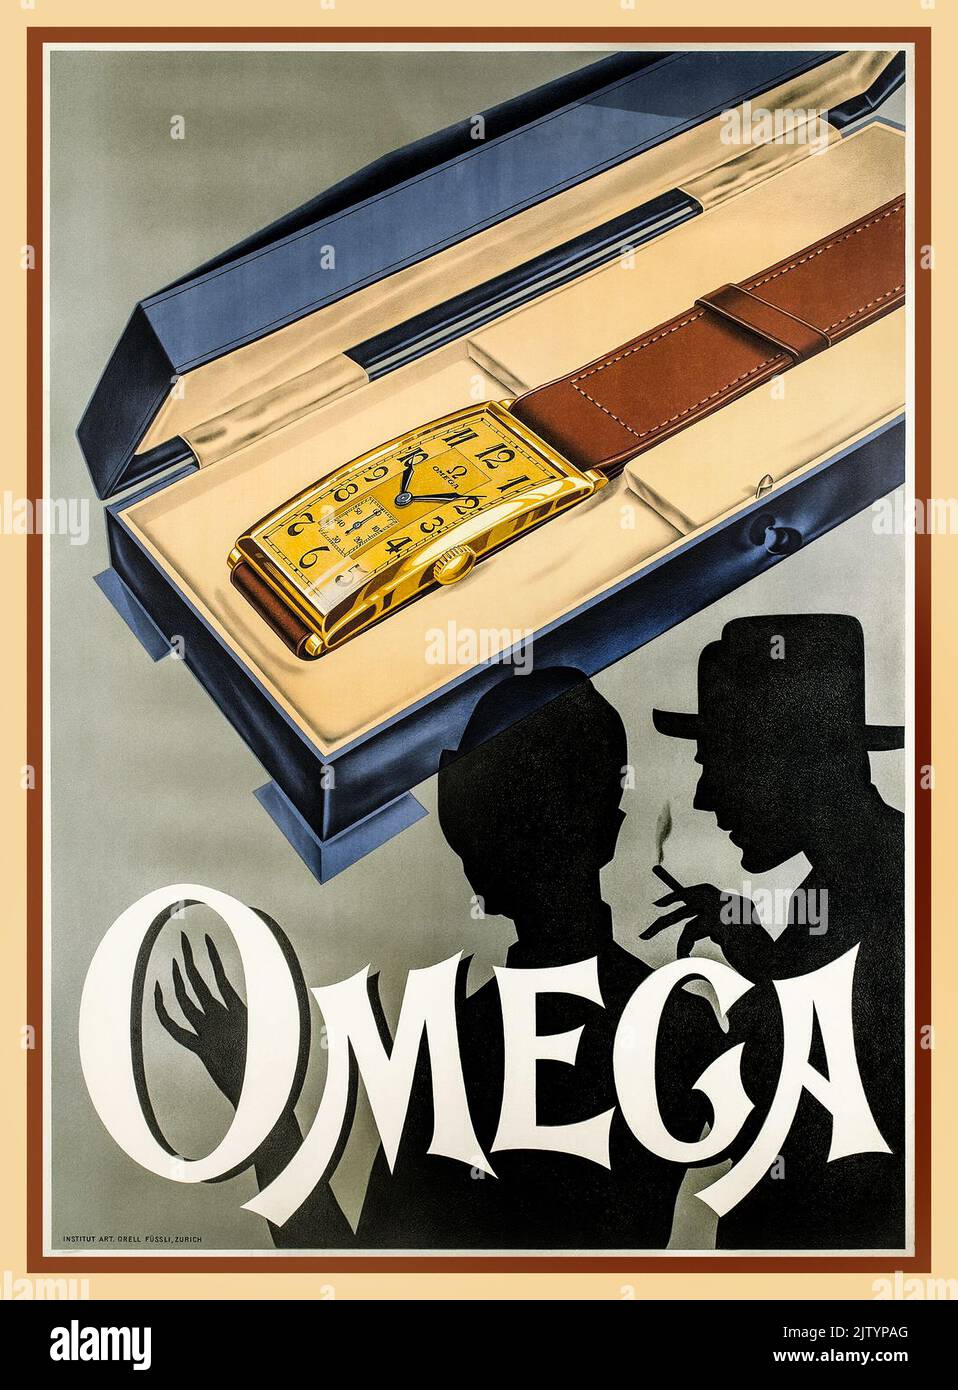 1920s AFFICHE publicitaire OMEGA Watch de type Omega AR738 fabriqué en 1929. L'une des premières montres Omega de style Art déco vintage et l'une des premières affiches publicitaires publiées par Omega watches Lithographie impression Banque D'Images